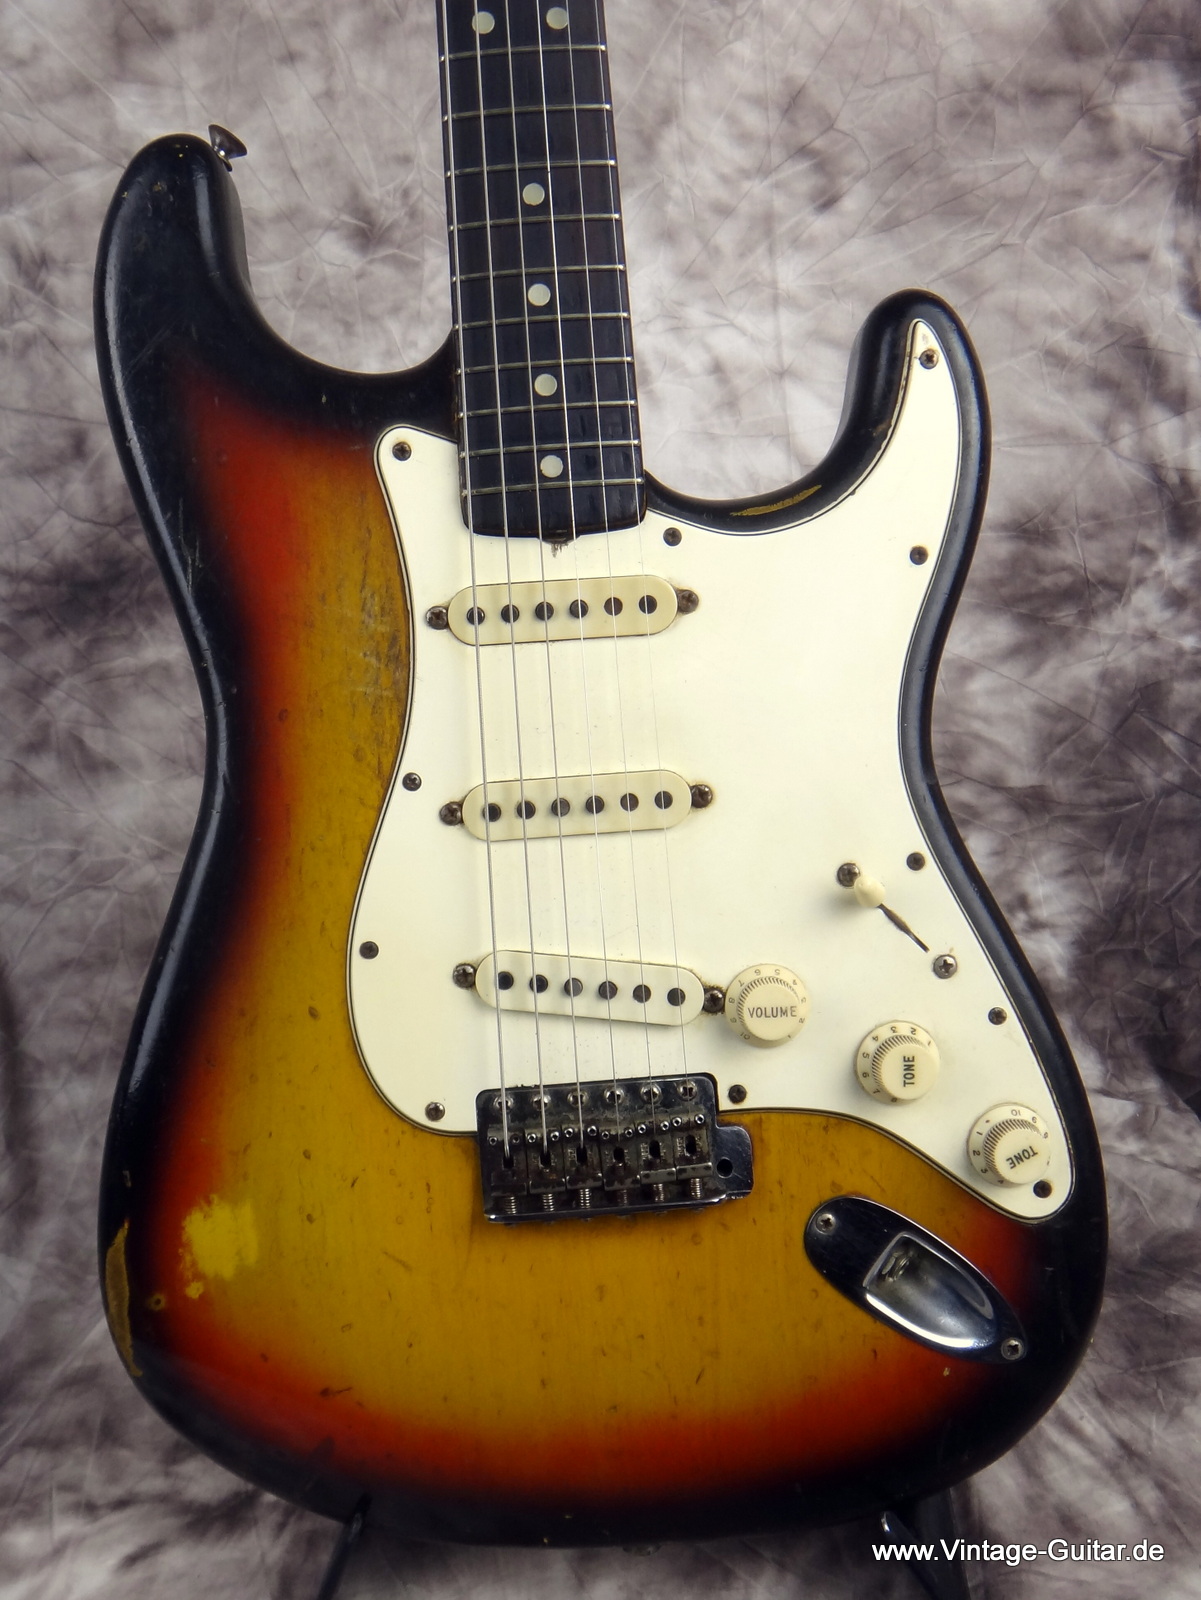 Fender_Stratocaster_1965-sunburst_all-original-002.JPG